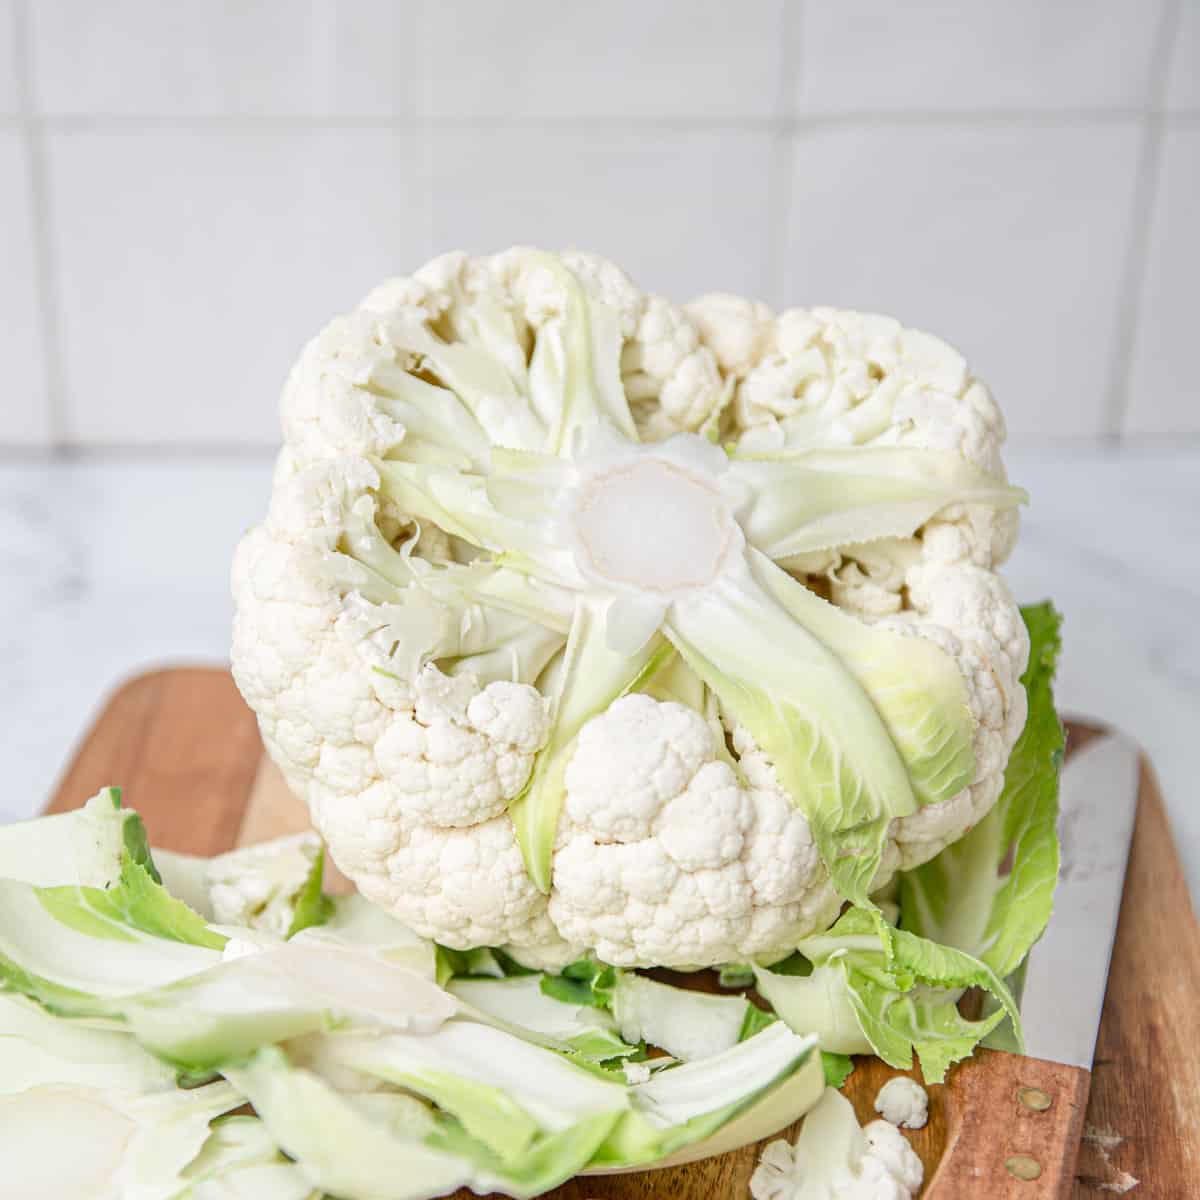 Trimmed cauliflower on a cutting board.